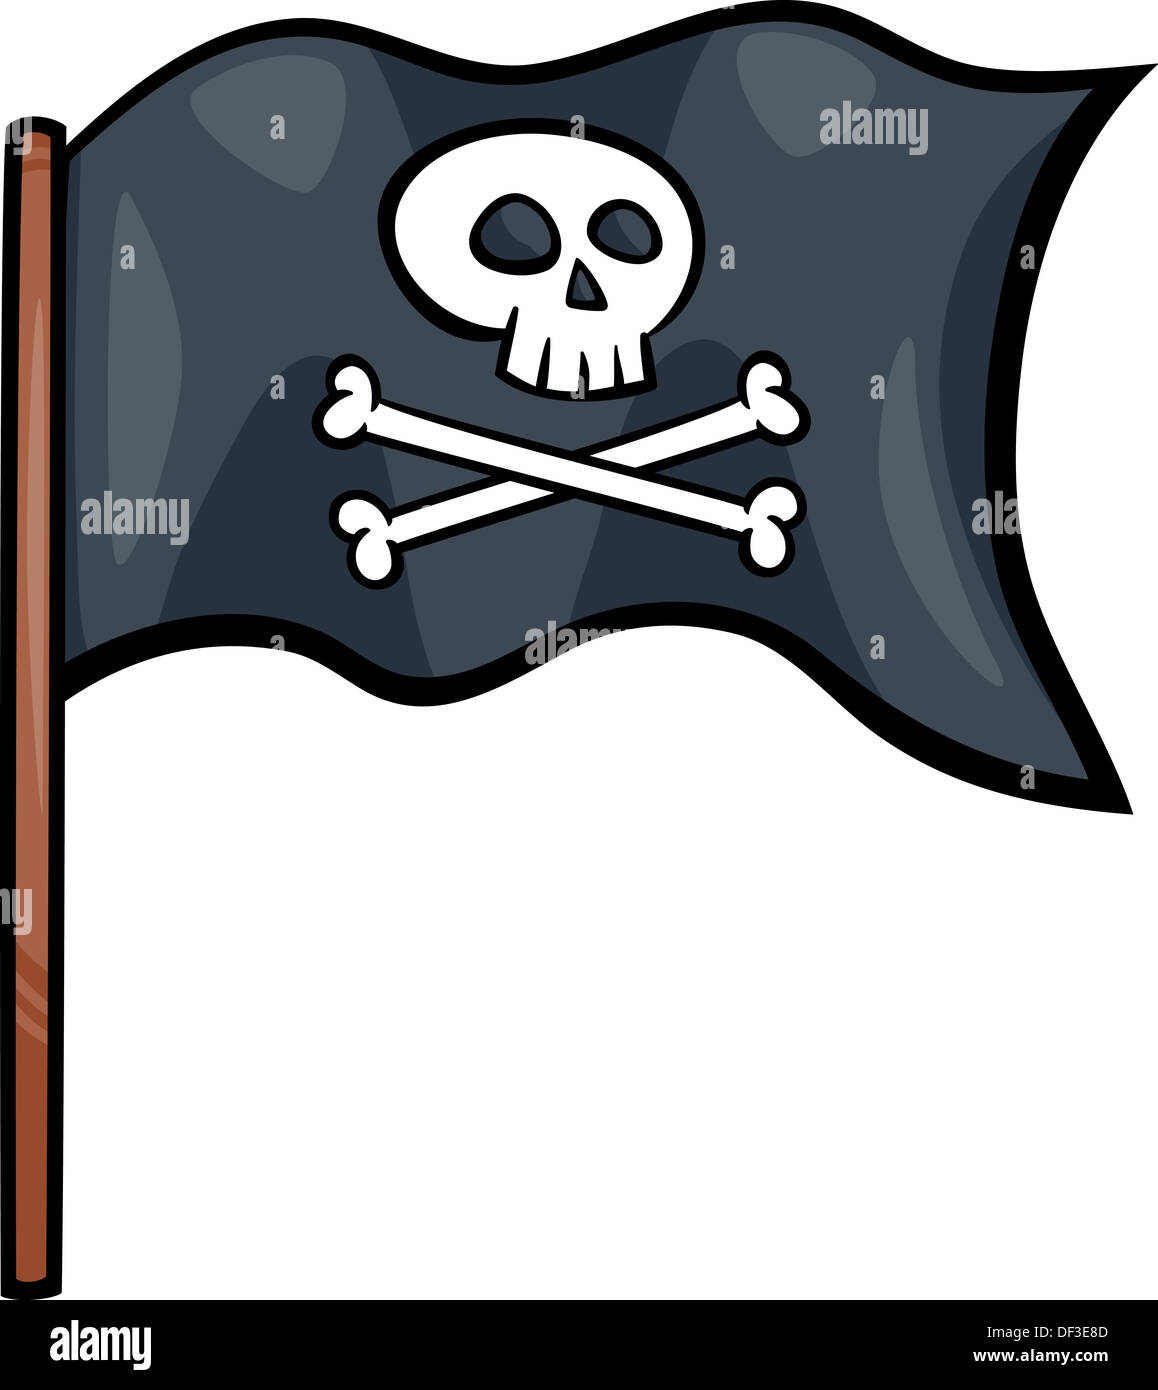 https://c8.alamy.com/compes/df3e8d/ilustracion-de-dibujos-animados-con-bandera-pirata-de-la-calavera-y-los-huesos-o-jolly-roger-objeto-predisenada-df3e8d.jpg